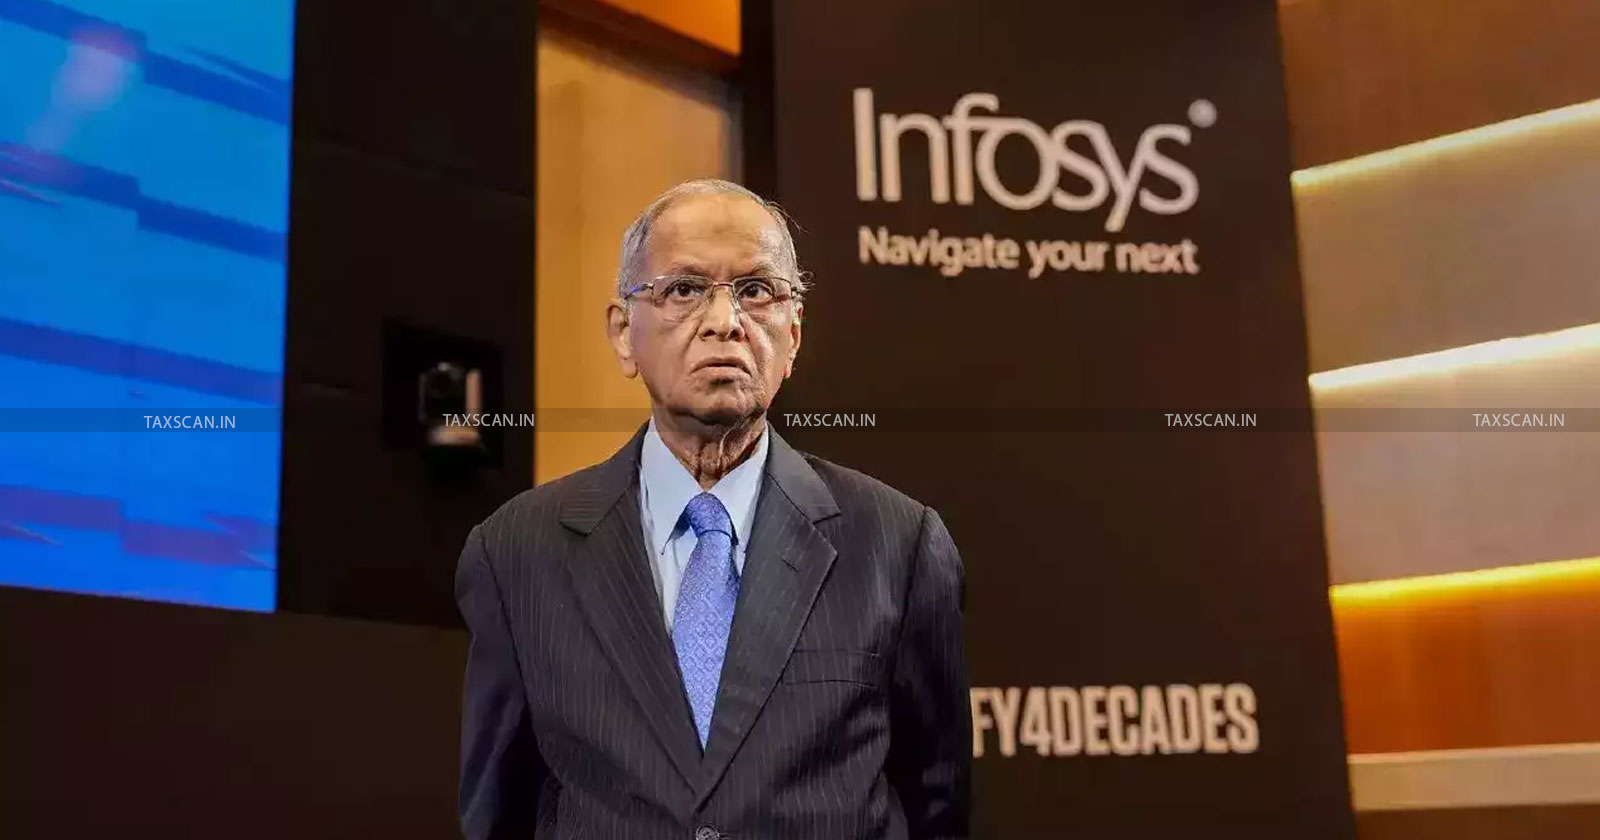 Infosys - Narayana Murthy - Infosys founder Narayana Murthy - TAXSCAN